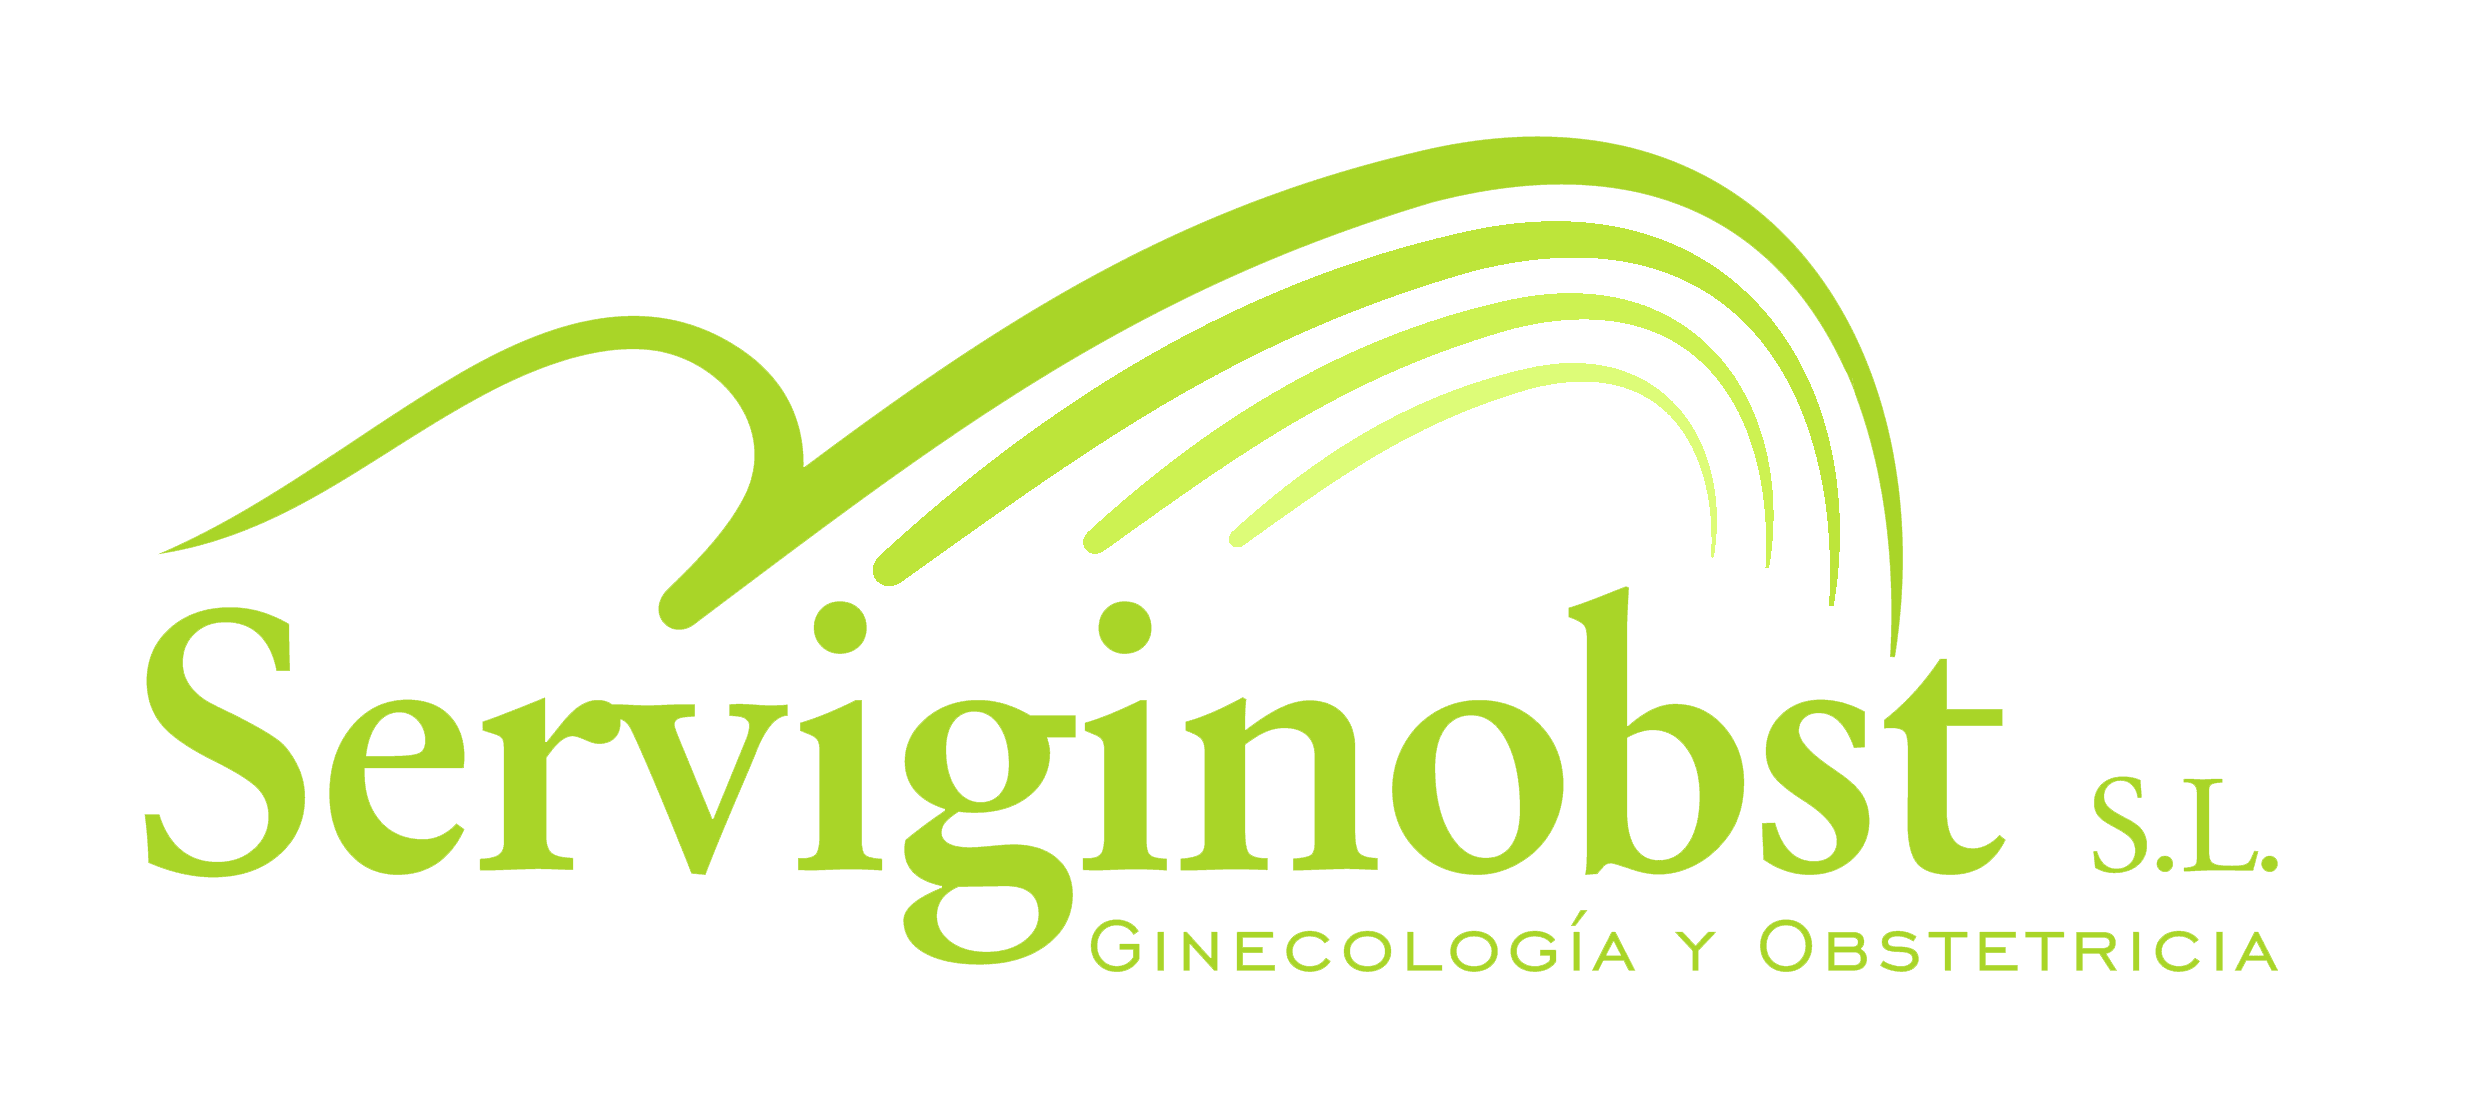 Ginecología y obstetricia Serviginobst